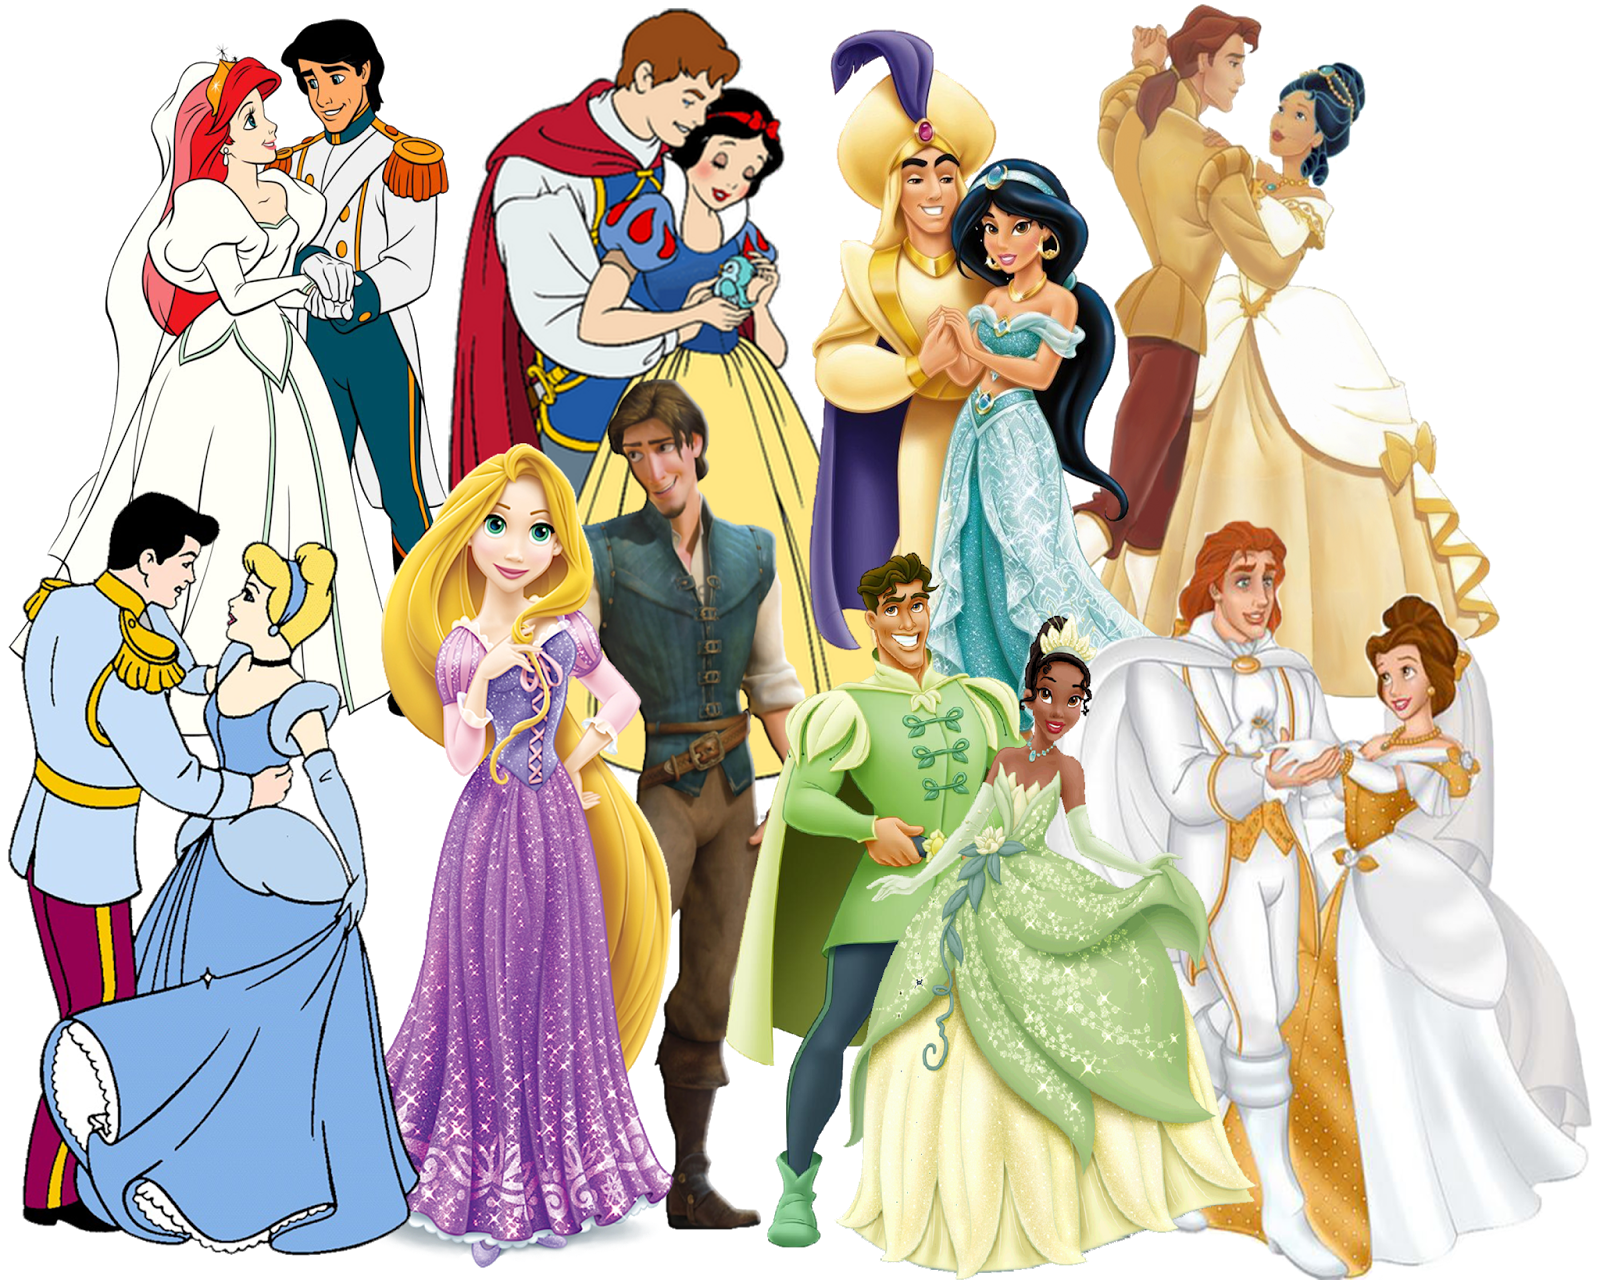 Дисней длинный. Принцессы Диснея и их принцы. Принцессы Диснея Мулан с принцем. Принцы Диснея и их принцессы Диснея. Disney принц.